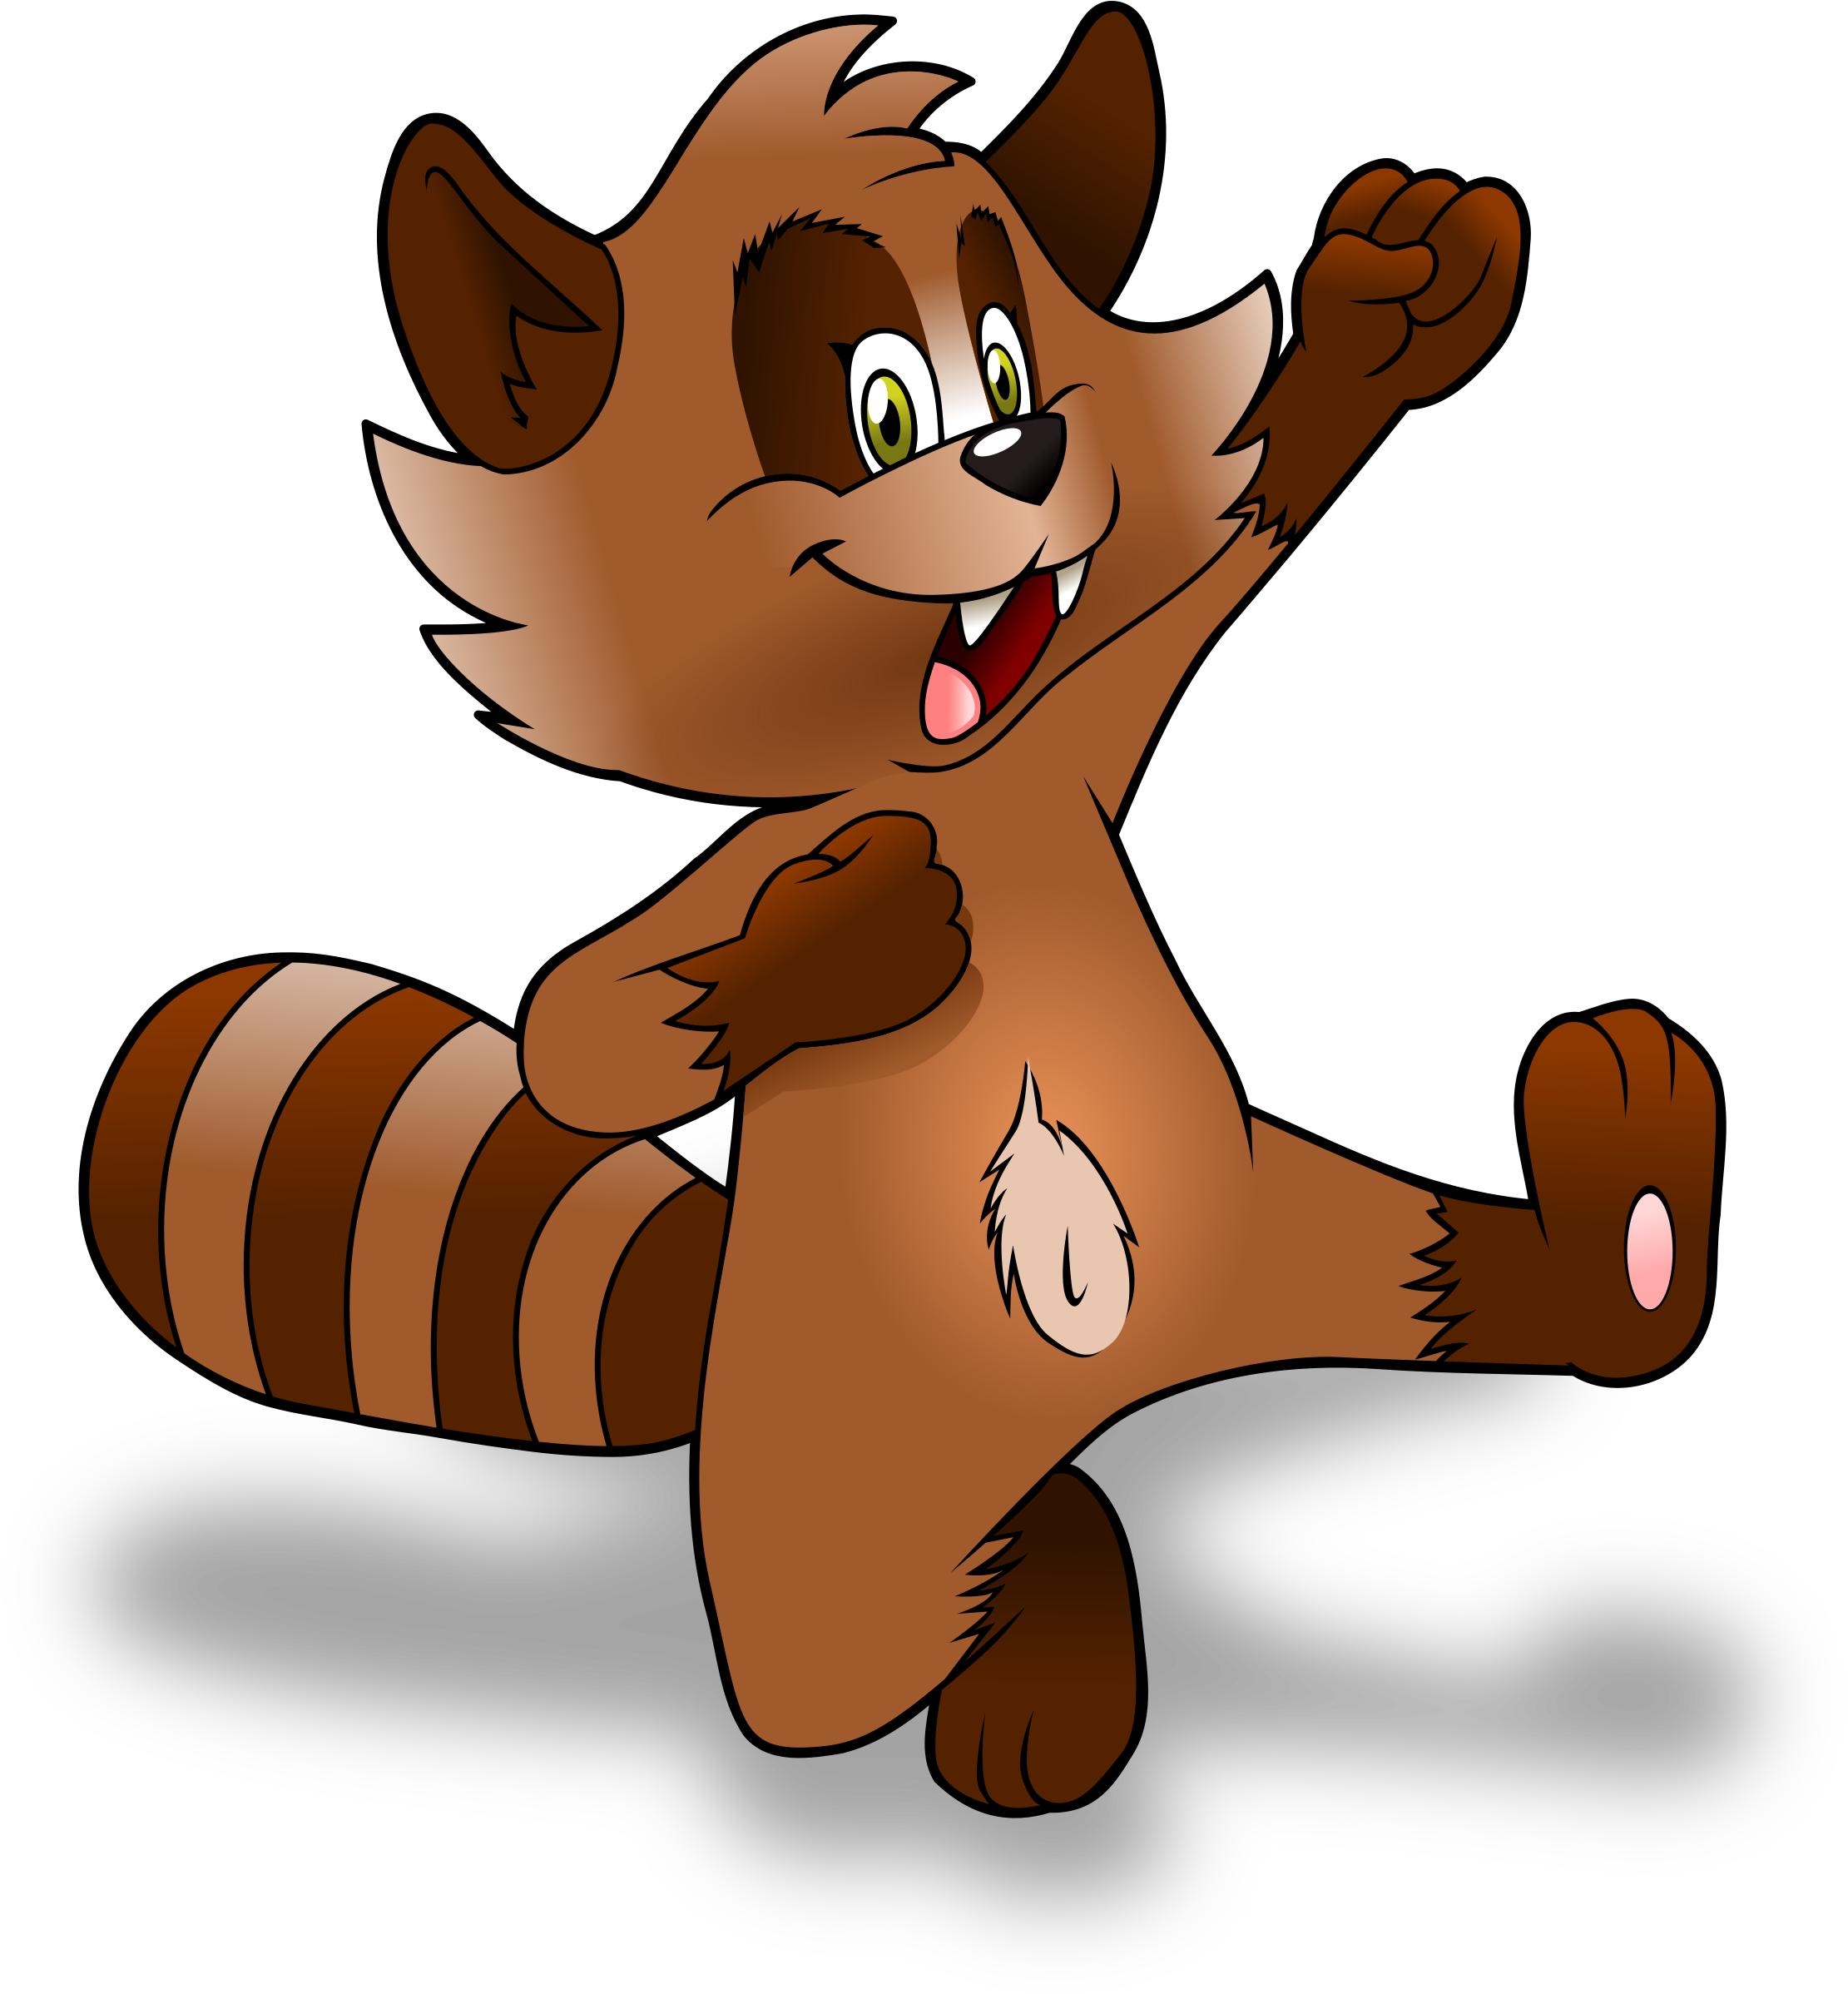 Tanuki - Japanese Raccoon Dog Cartoon (2235x2400)